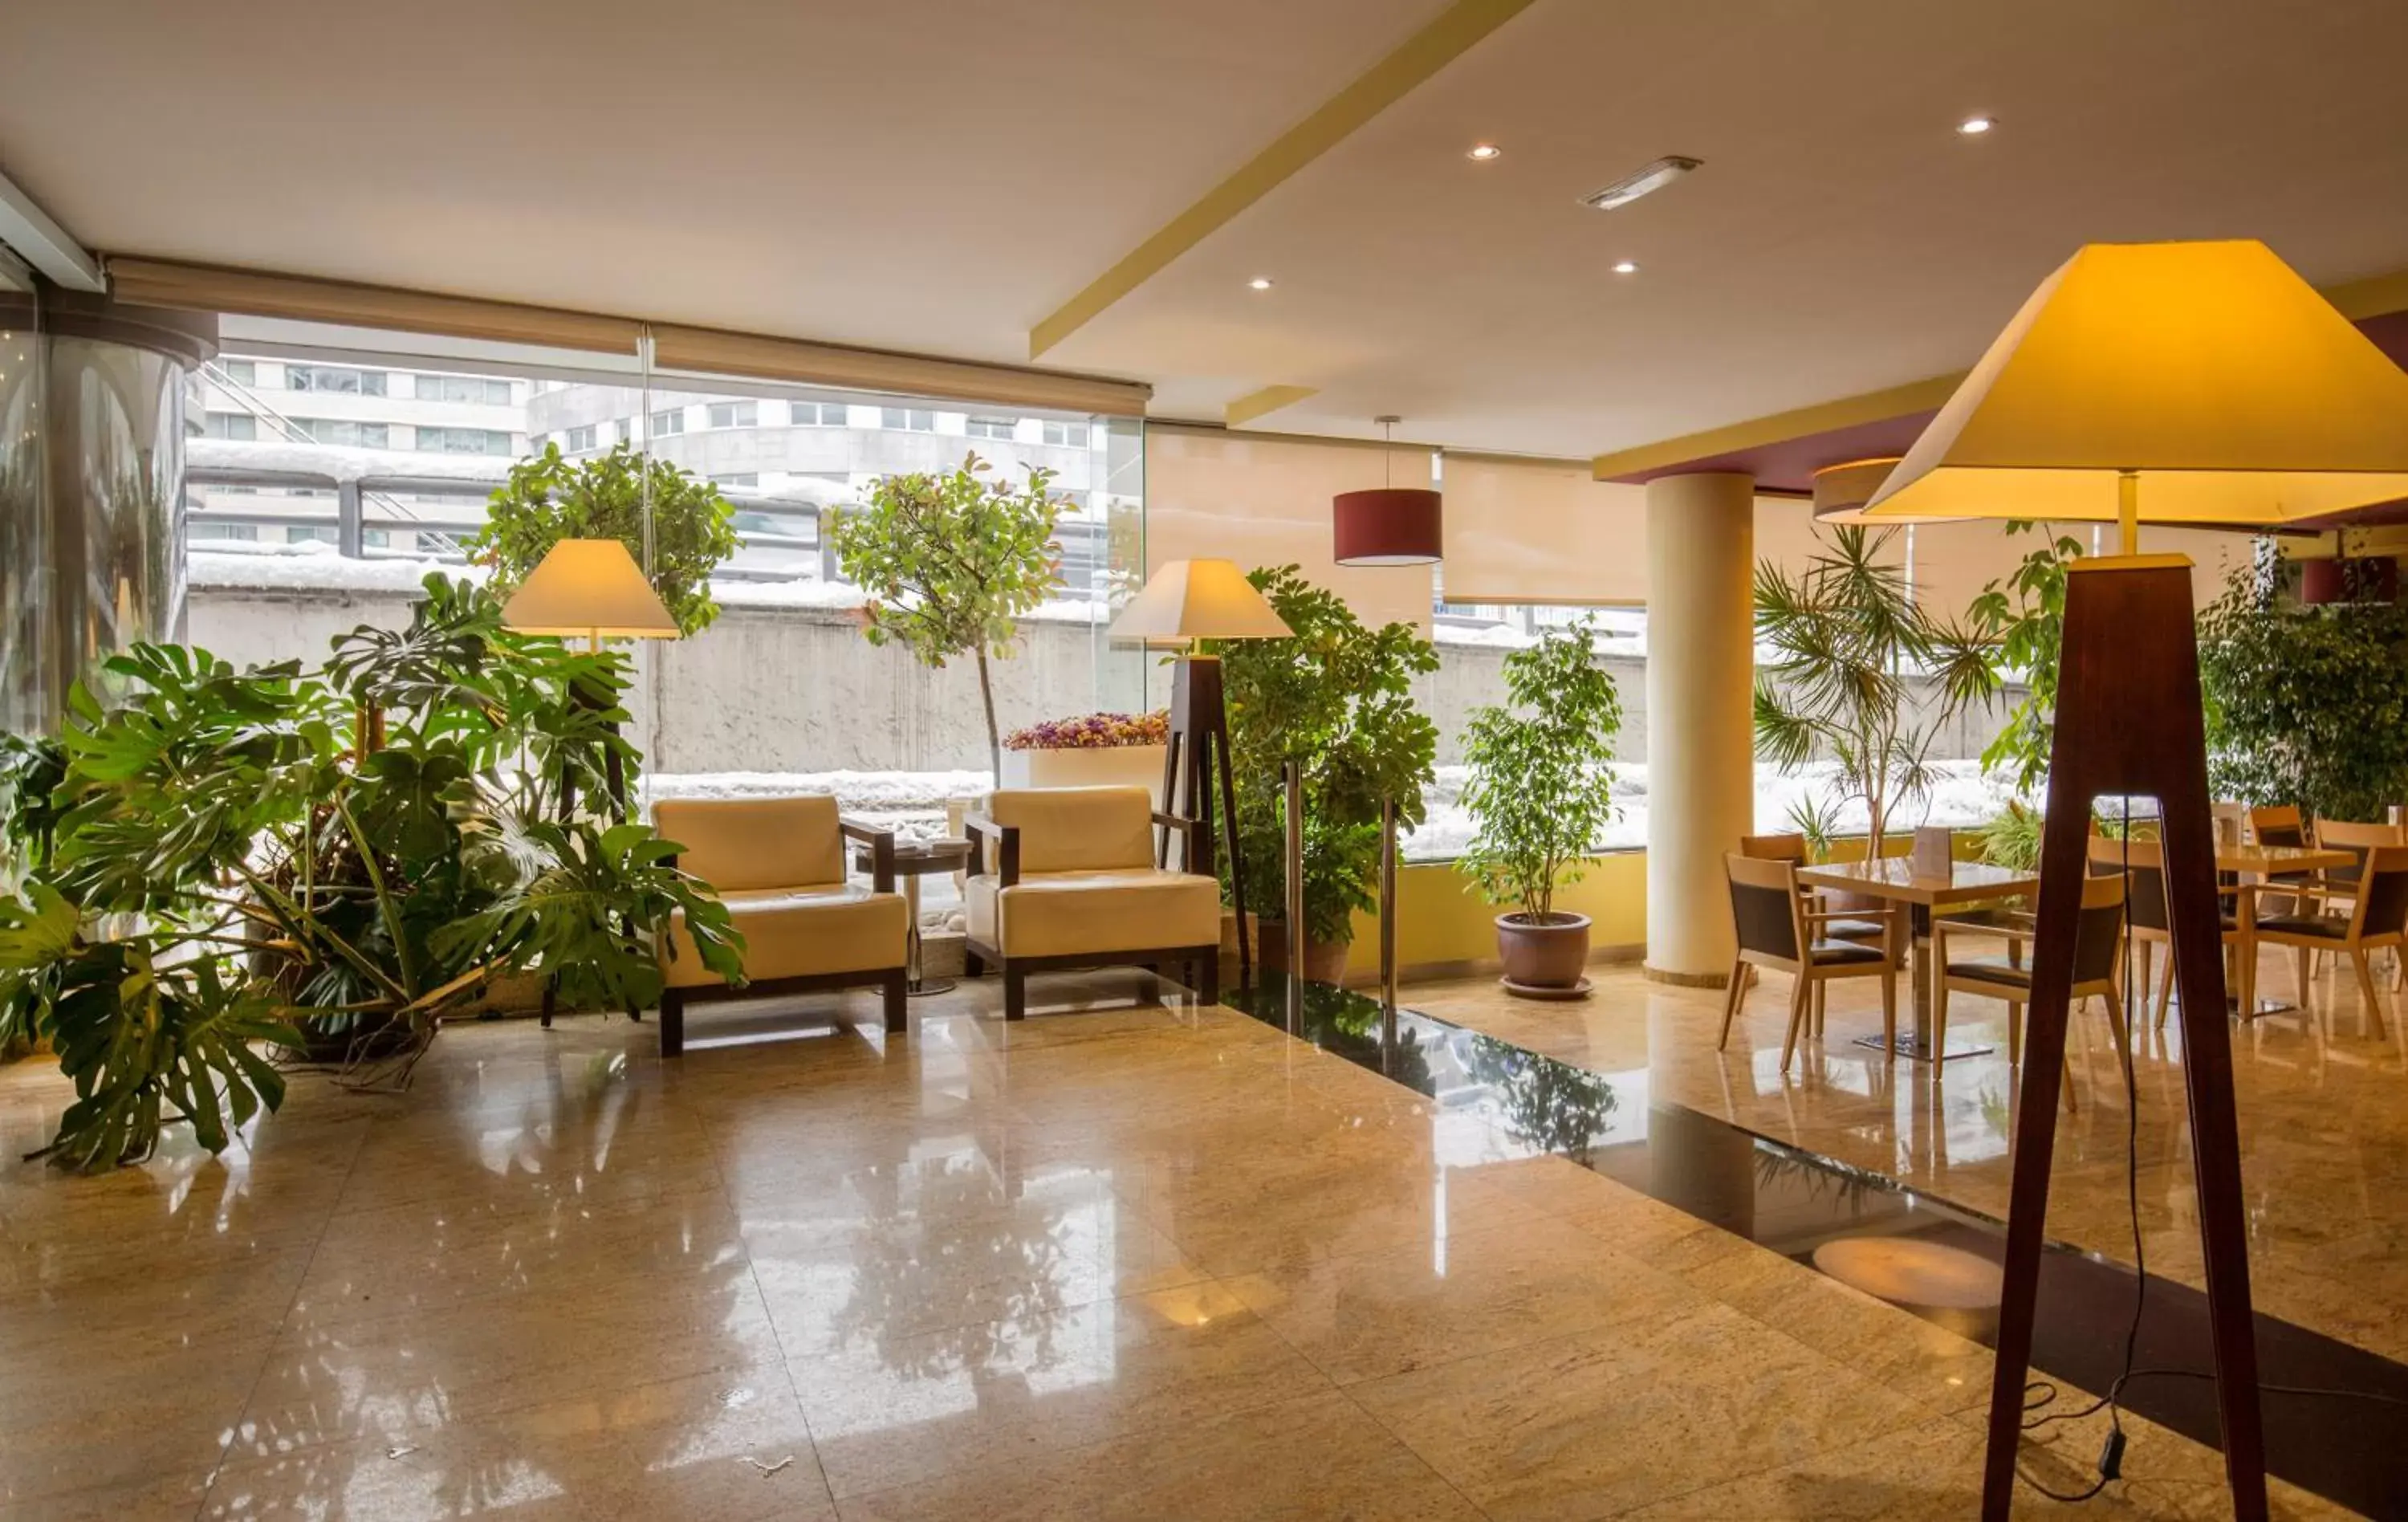 Lobby or reception, Lobby/Reception in Hotel Màgic Andorra